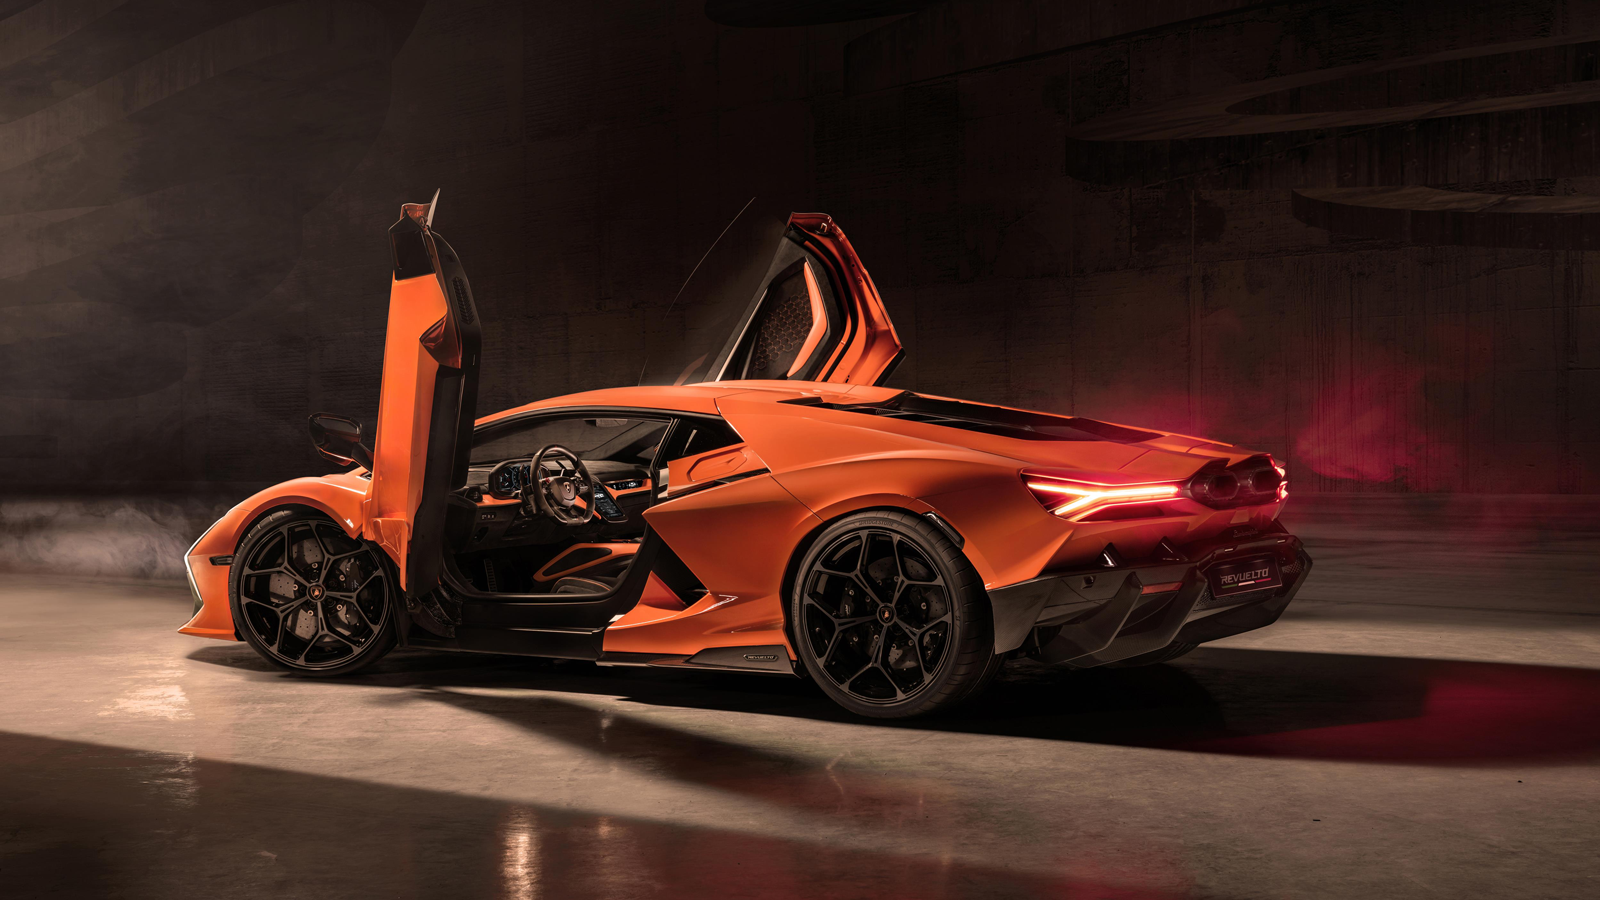 Ngắm nhìn siêu xe động cơ lai hợp kỷ niệm 60 năm thương hiệu Lamborghini 